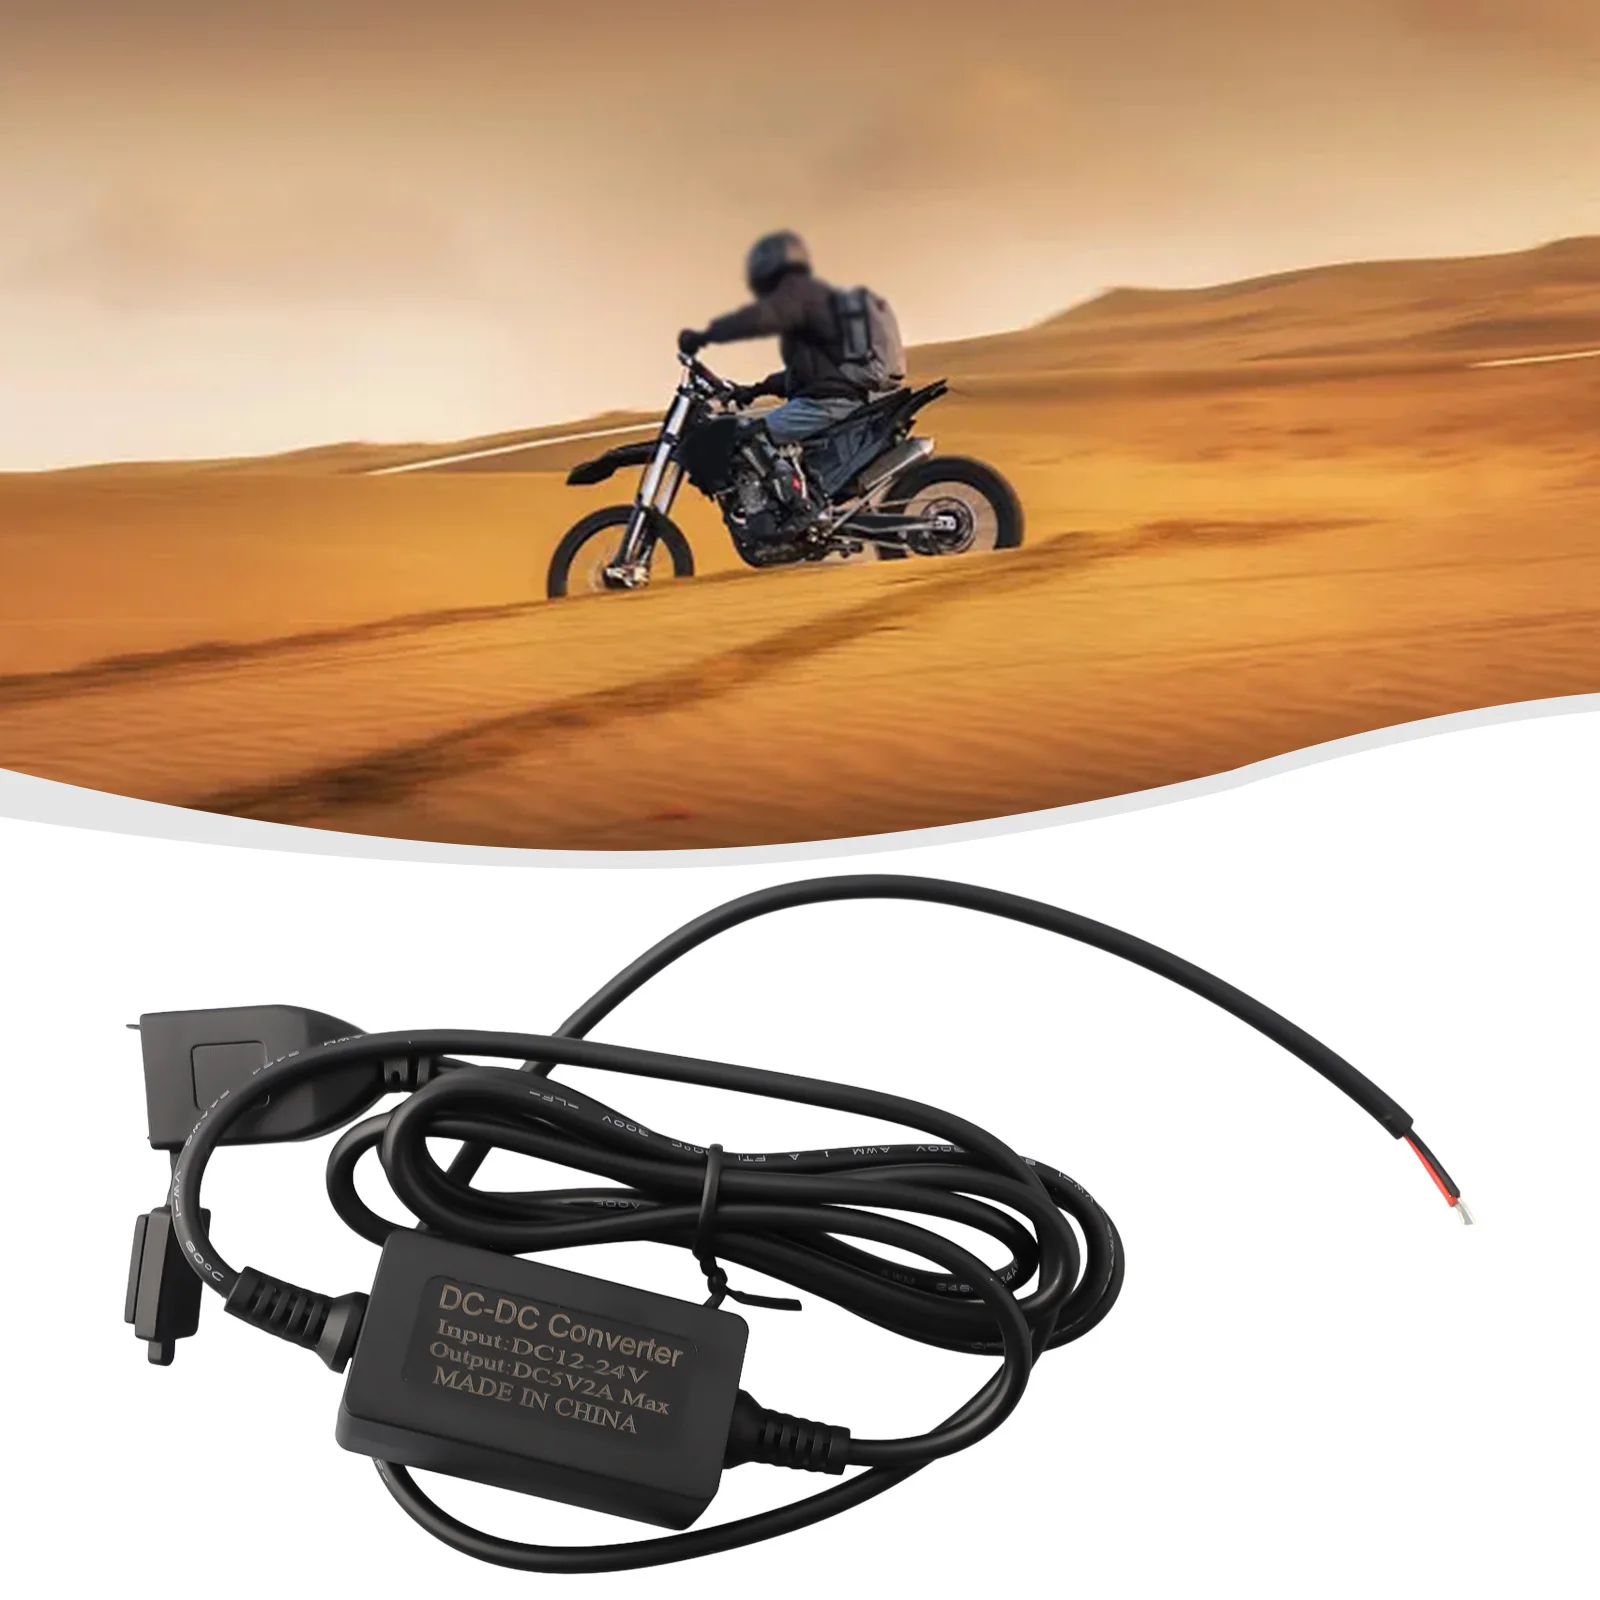 

Блок питания для мотоцикла, смартфона, мотоцикла, зарядное устройство, разъем питания, USB водонепроницаемый адаптер высокого качества